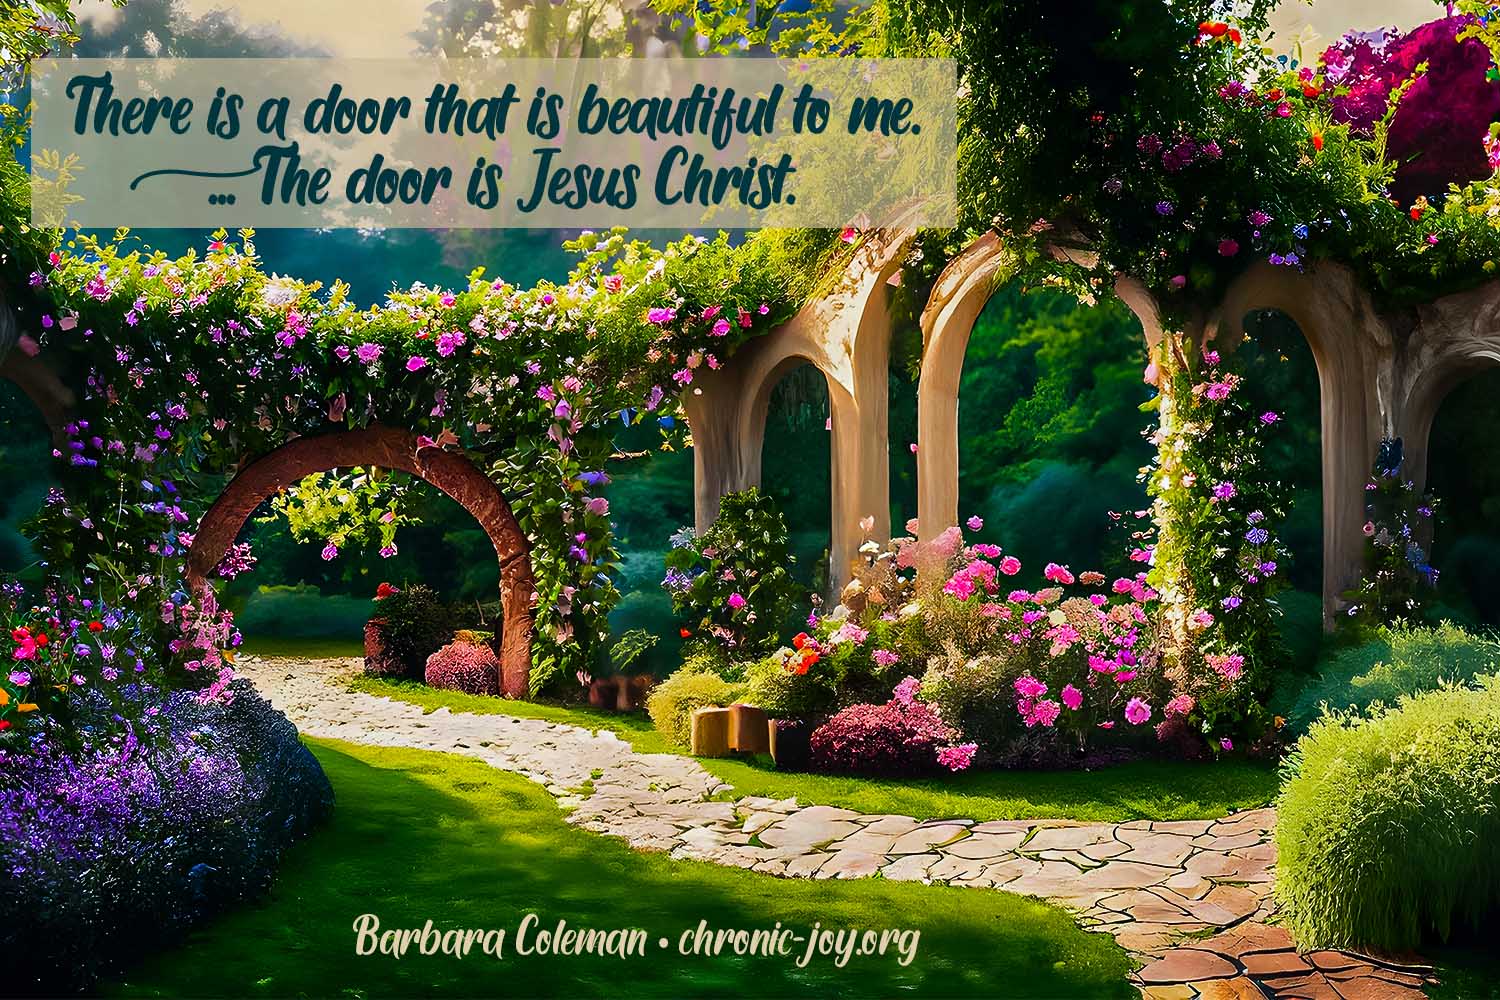 "There is a door that is beautiful to me. ... The door is Jesus Christ." Barbara Coleman